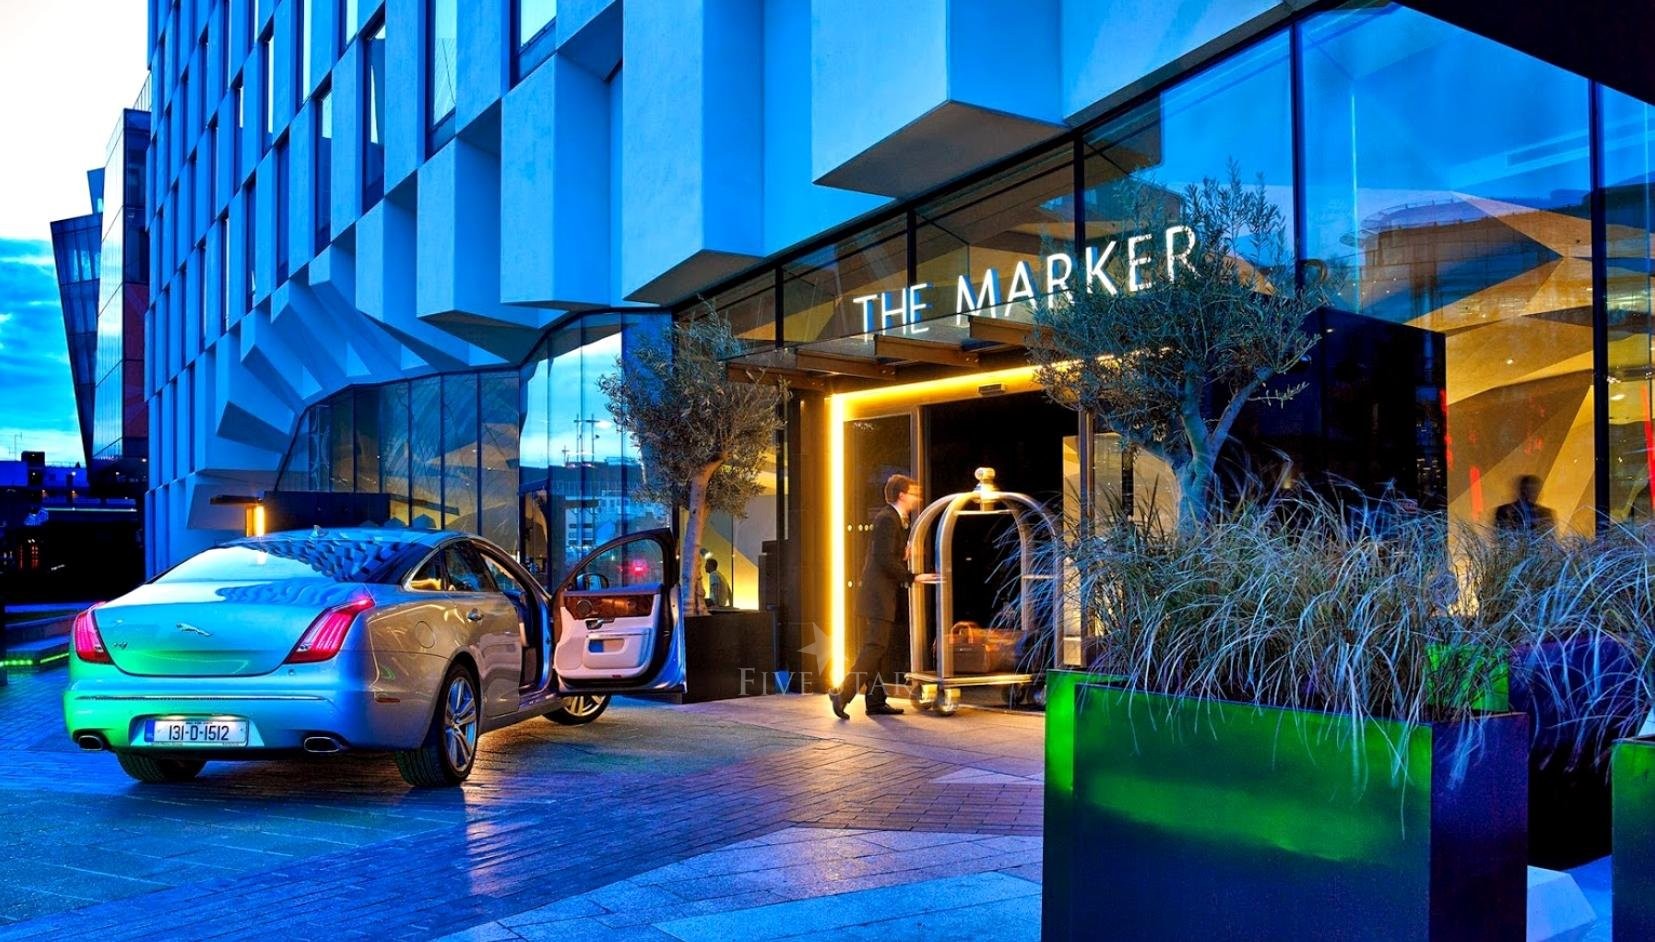 5-Star Marker Hotel, Dublin